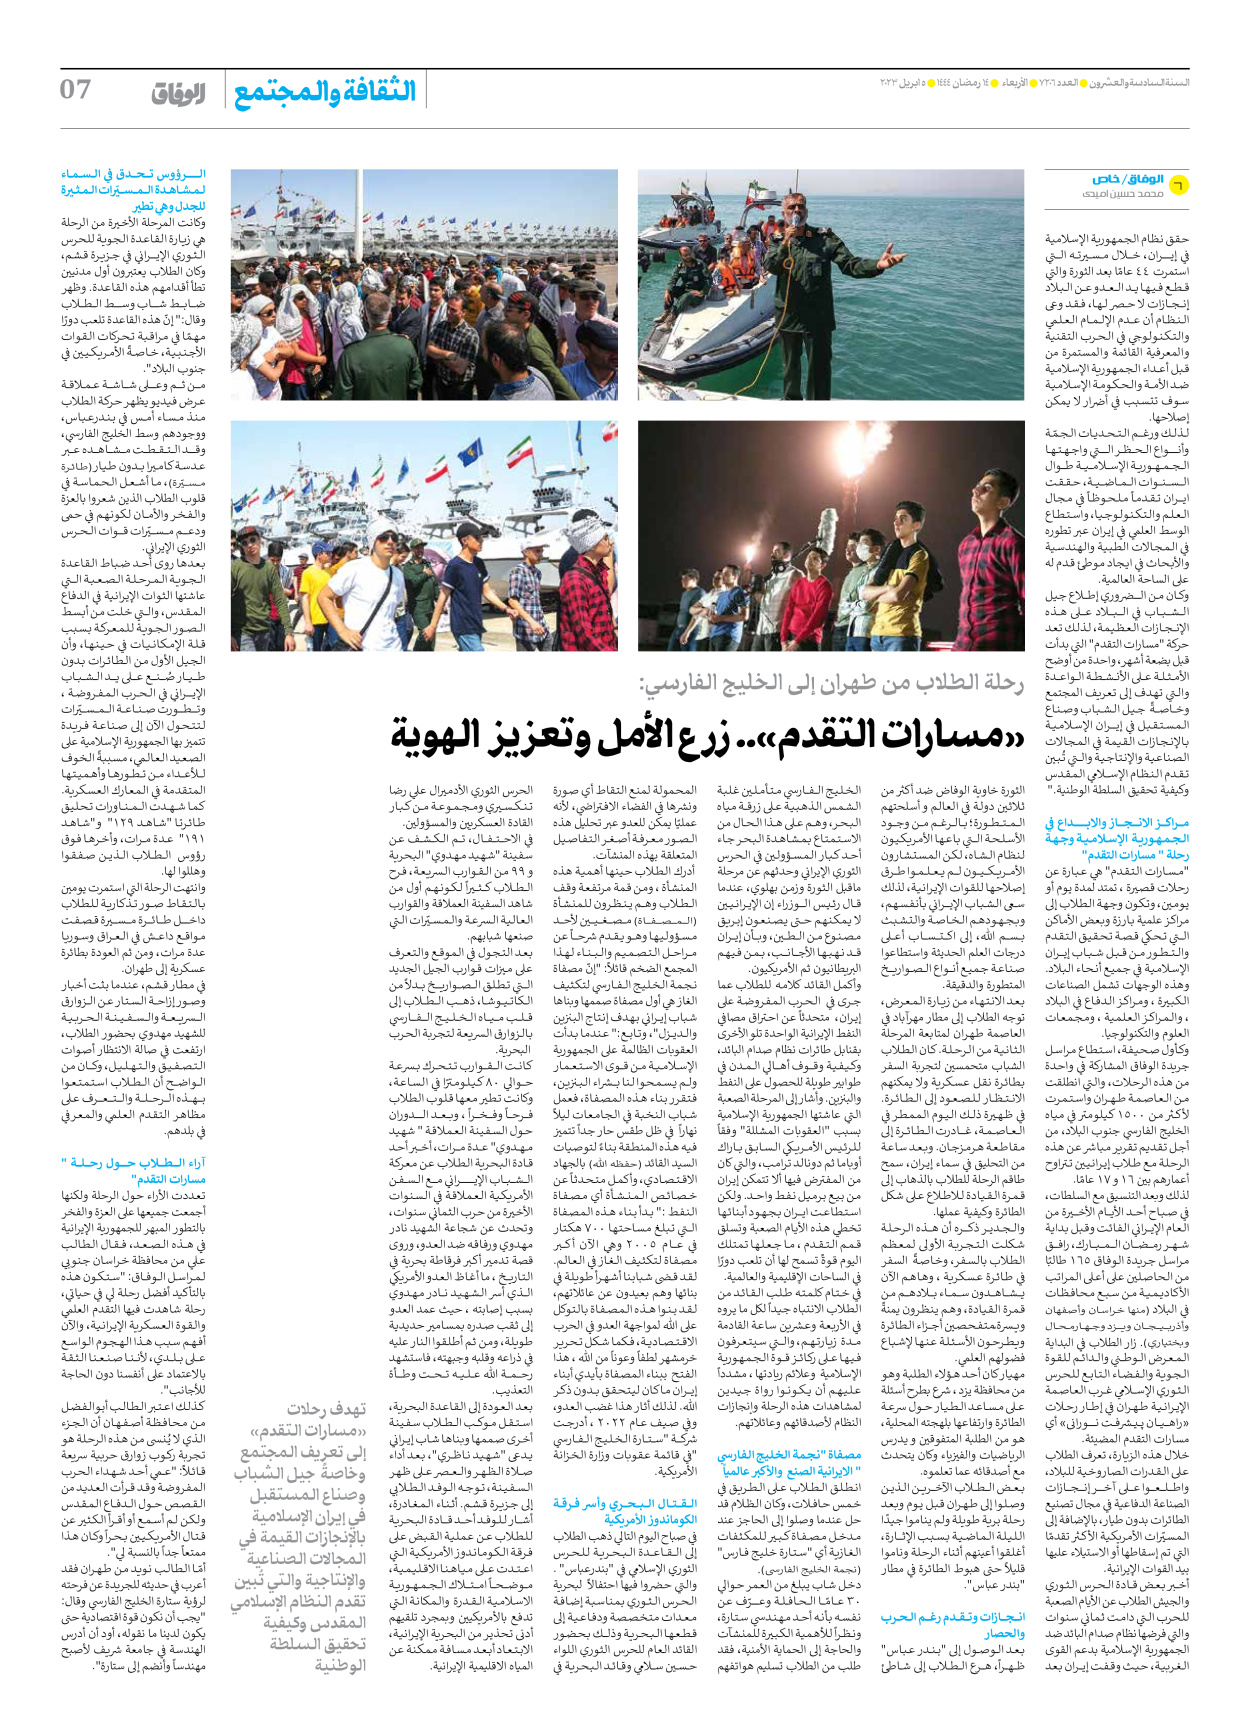 صحیفة ایران الدولیة الوفاق - العدد سبعة آلاف ومائتان وستة - ٠٥ أبريل ٢٠٢٣ - الصفحة ۷